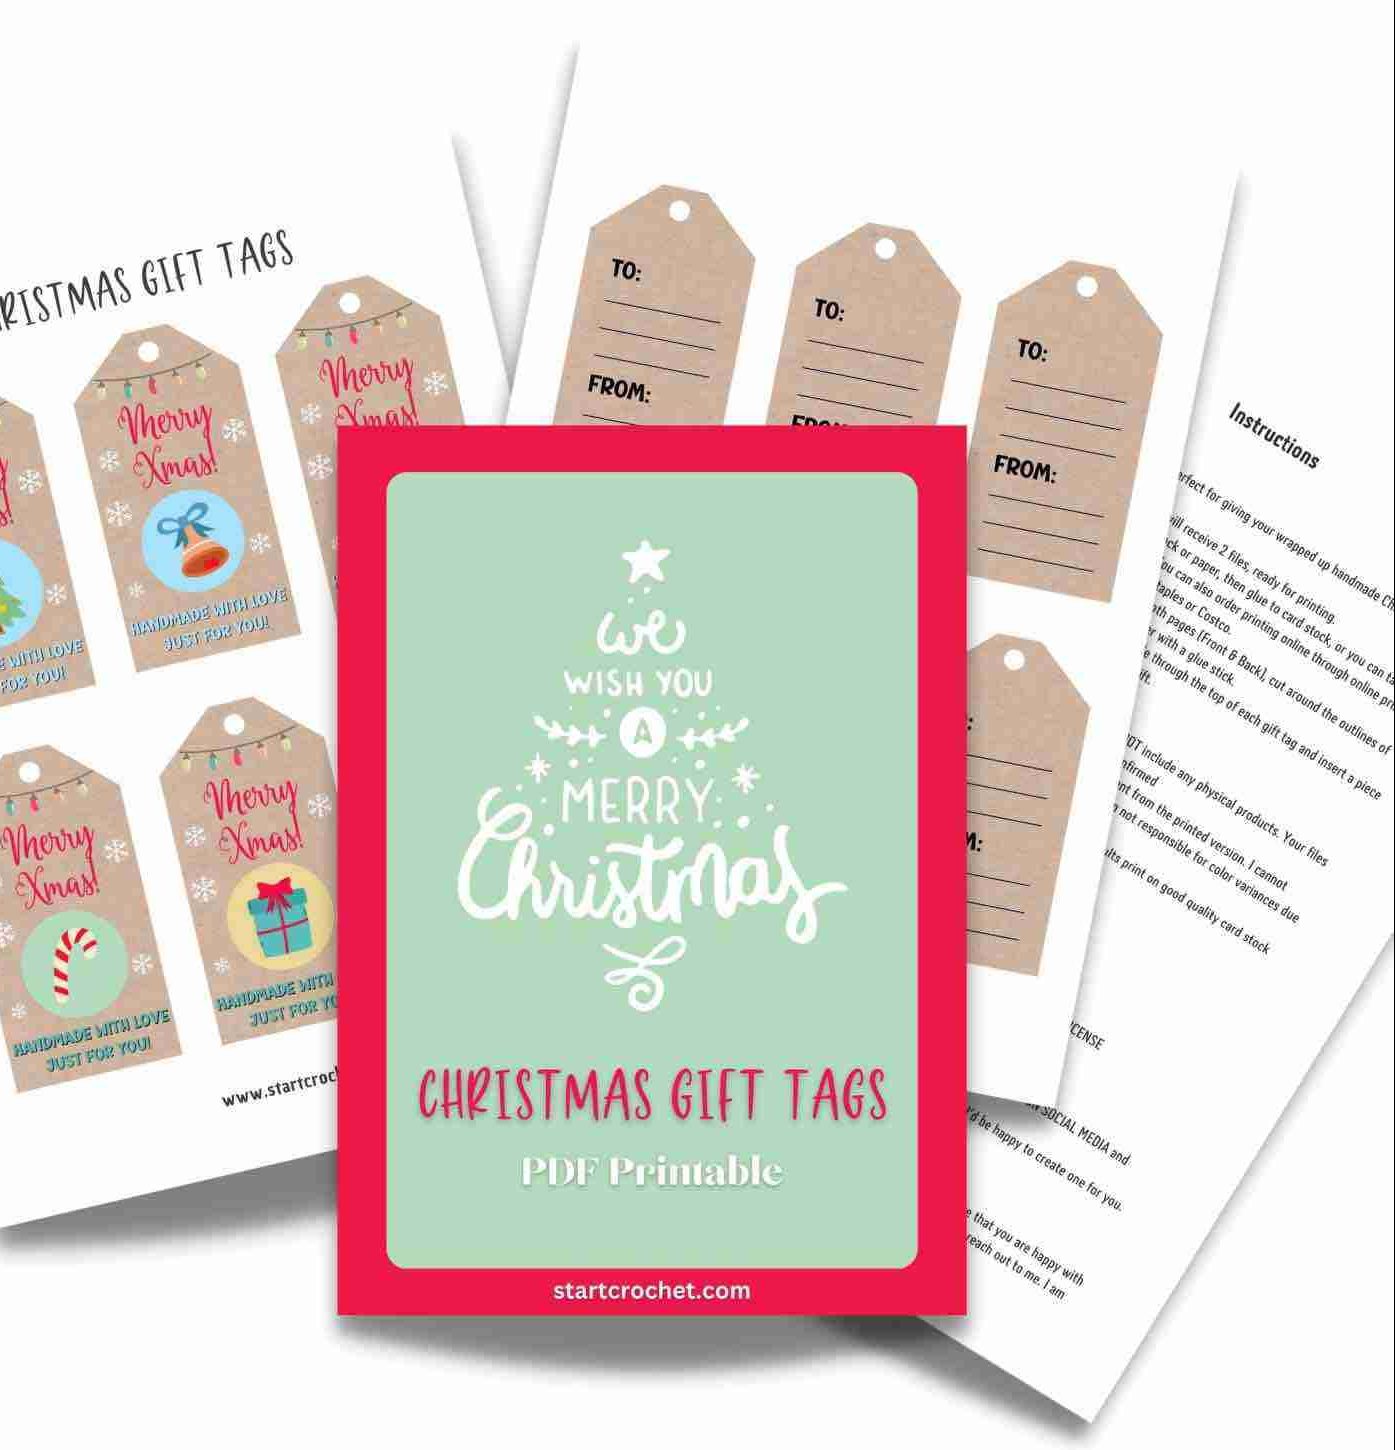 Christmas Gift Tags PDF Printable Handmade With Love